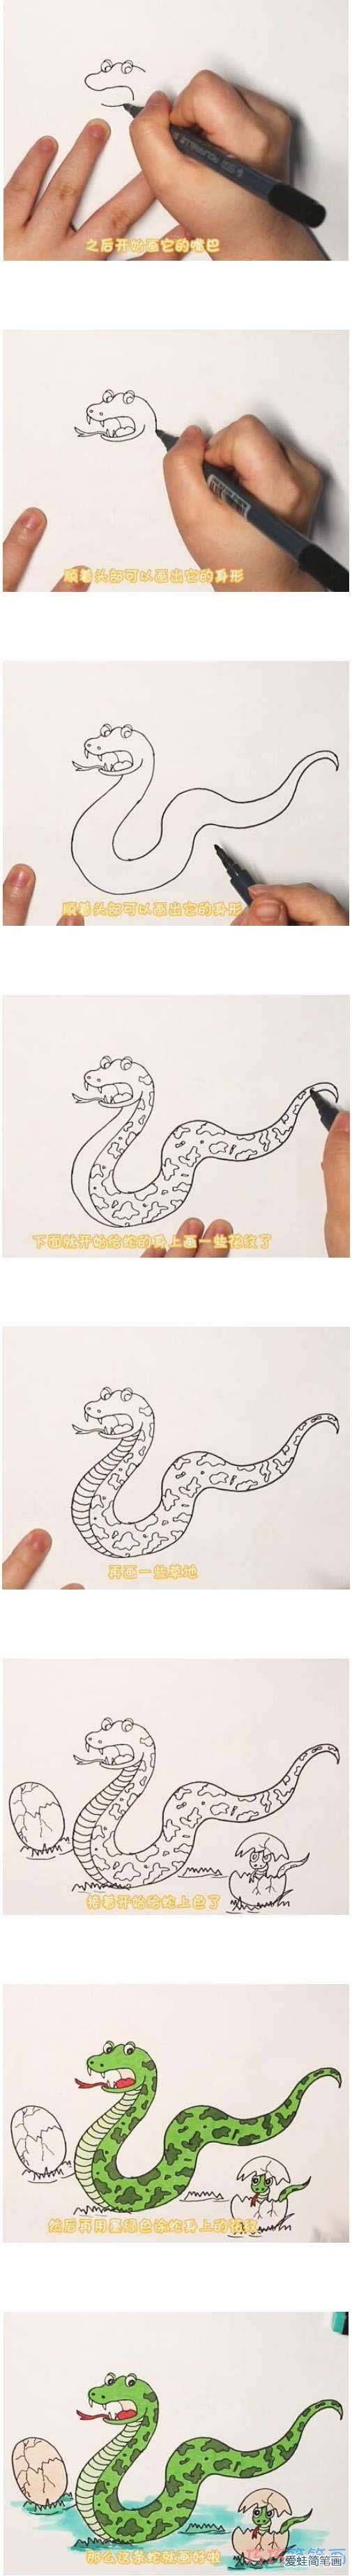 教你怎么画蛇简笔画